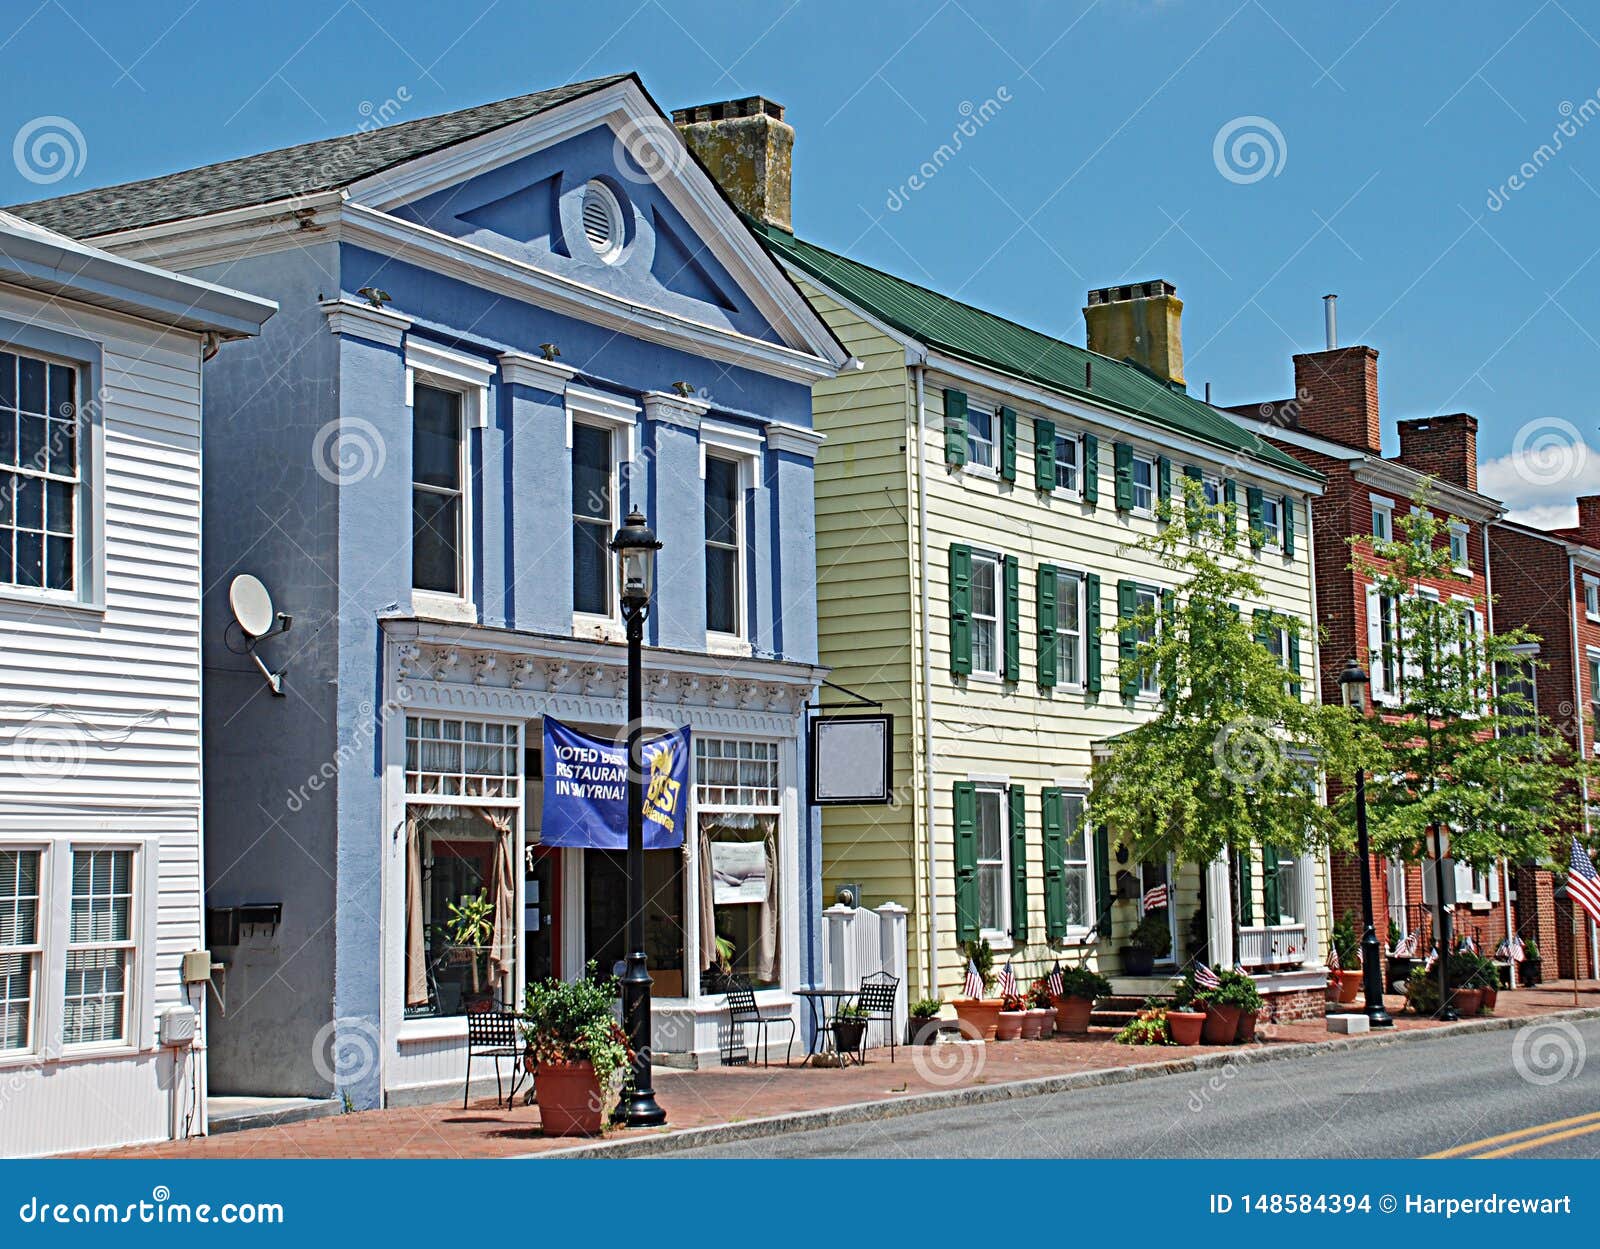 Main Street in Smyrna Delaware Stock Ph